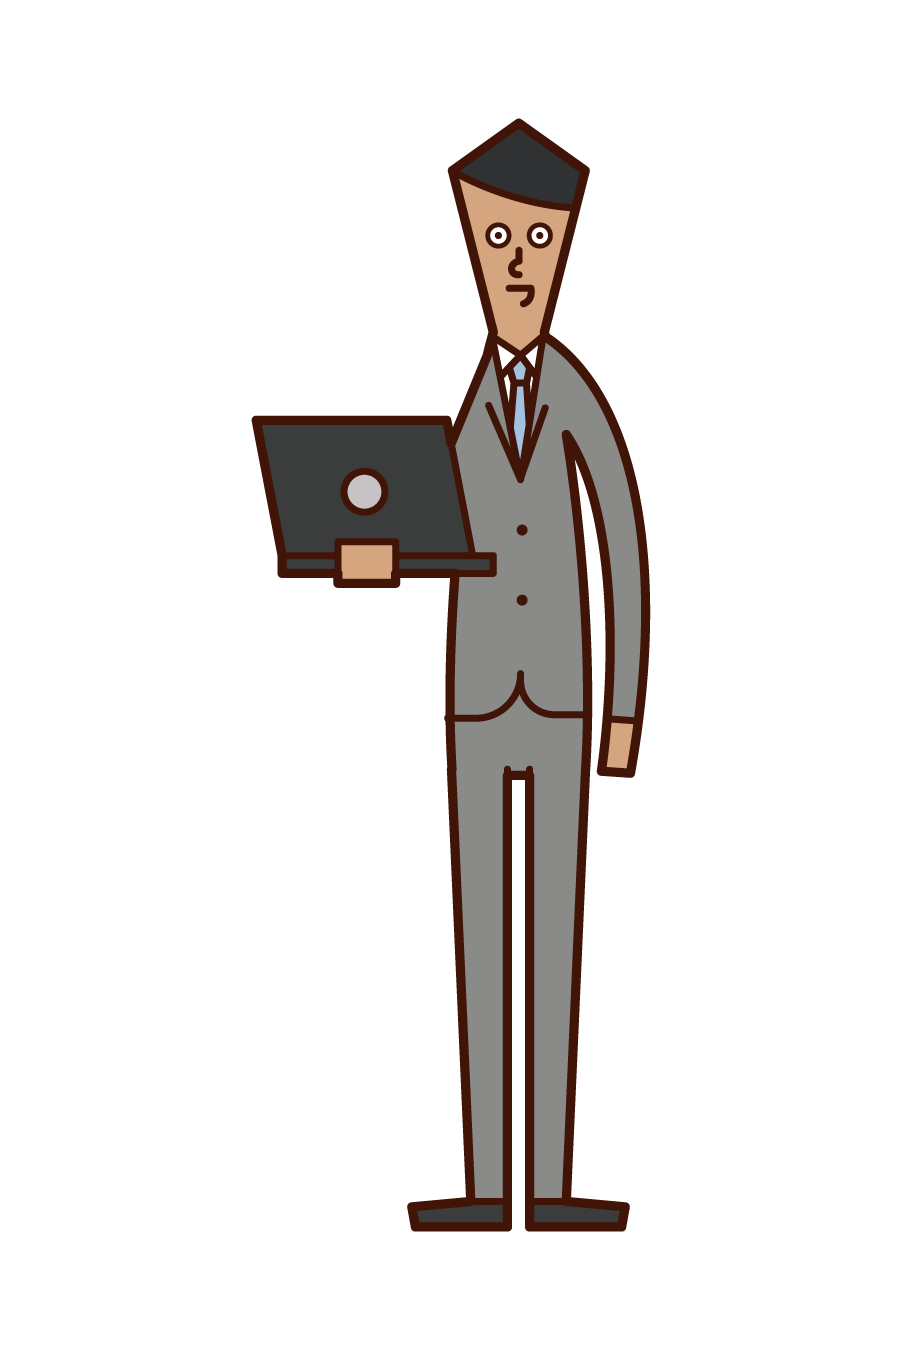 컴퓨터를 가진 사람 (남성)의 그림